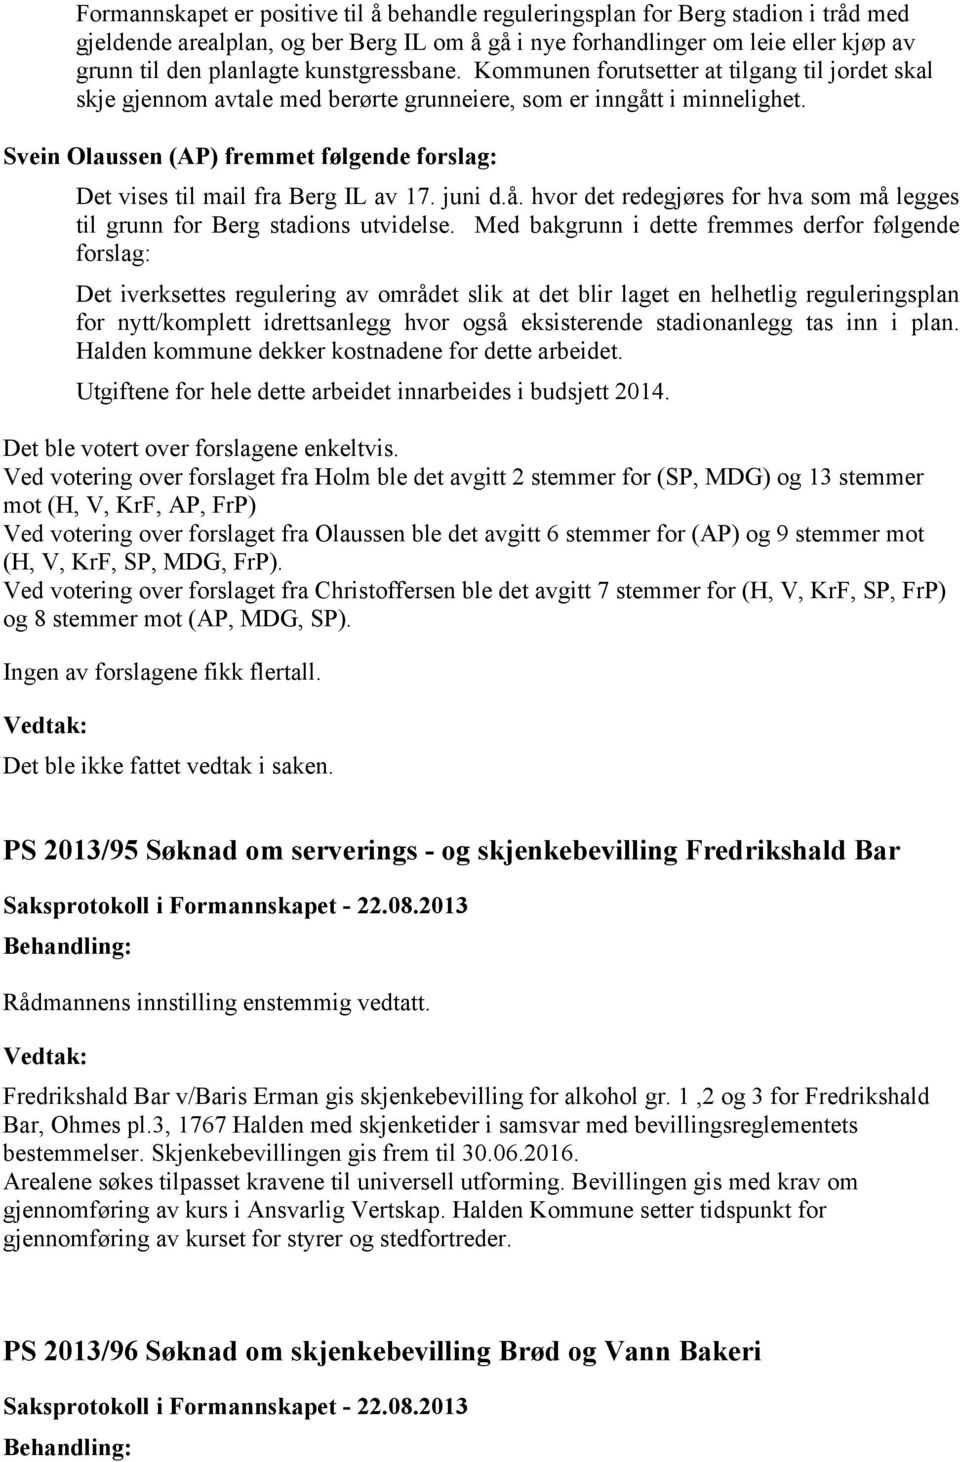 Svein Olaussen (AP) fremmet følgende forslag: Det vises til mail fra Berg IL av 17. juni d.å. hvor det redegjøres for hva som må legges til grunn for Berg stadions utvidelse.